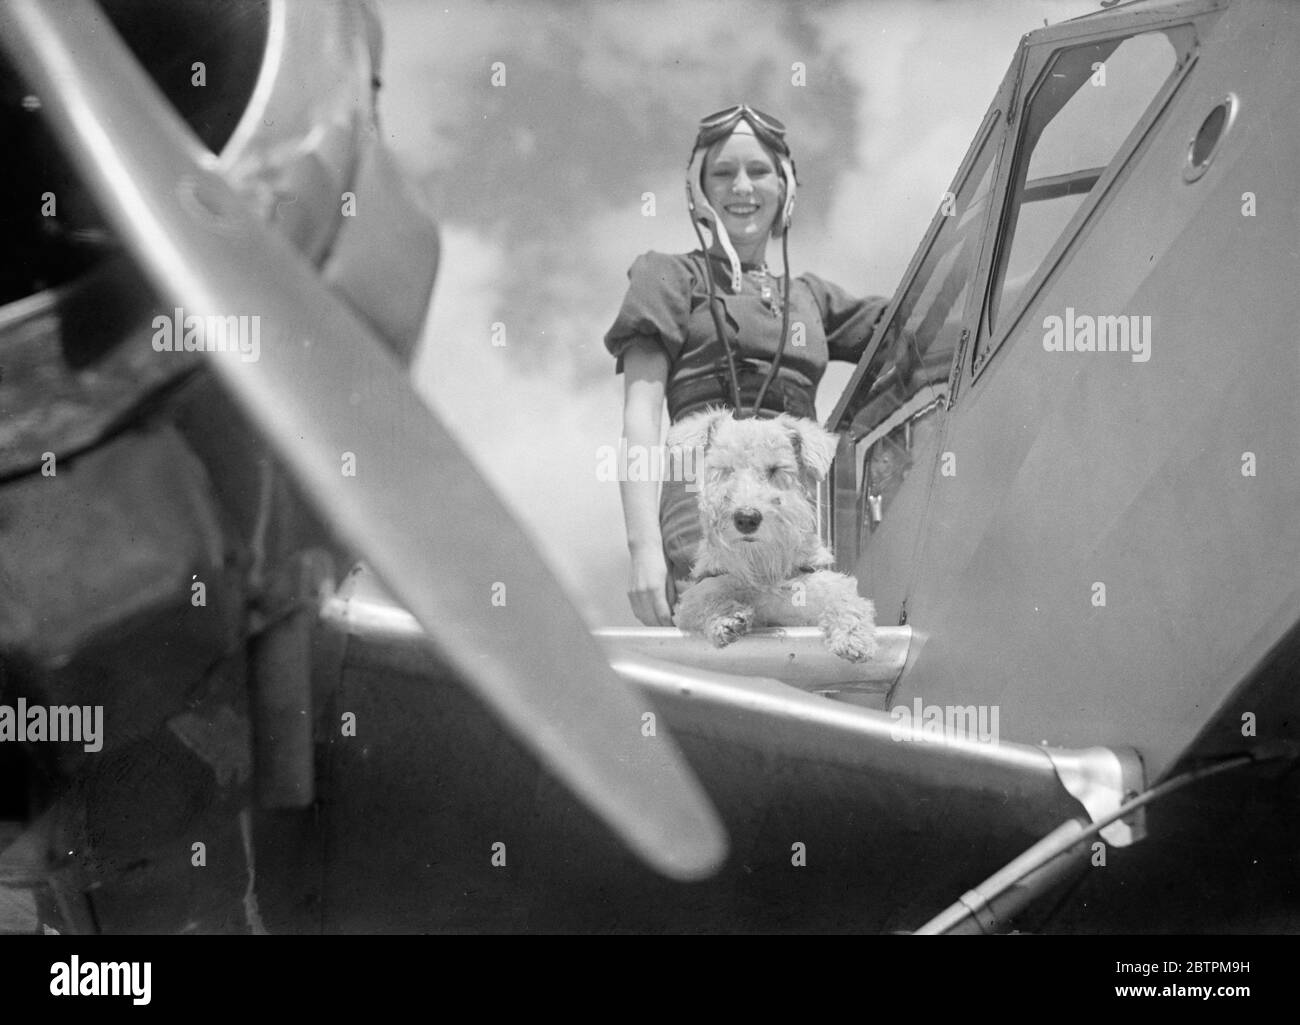 Aria mentalità . La signora Stace , affascinante donna aerea e direttore della compagnia aerea che sta per prendere il suo cane da compagnia su un volo . Foto Stock